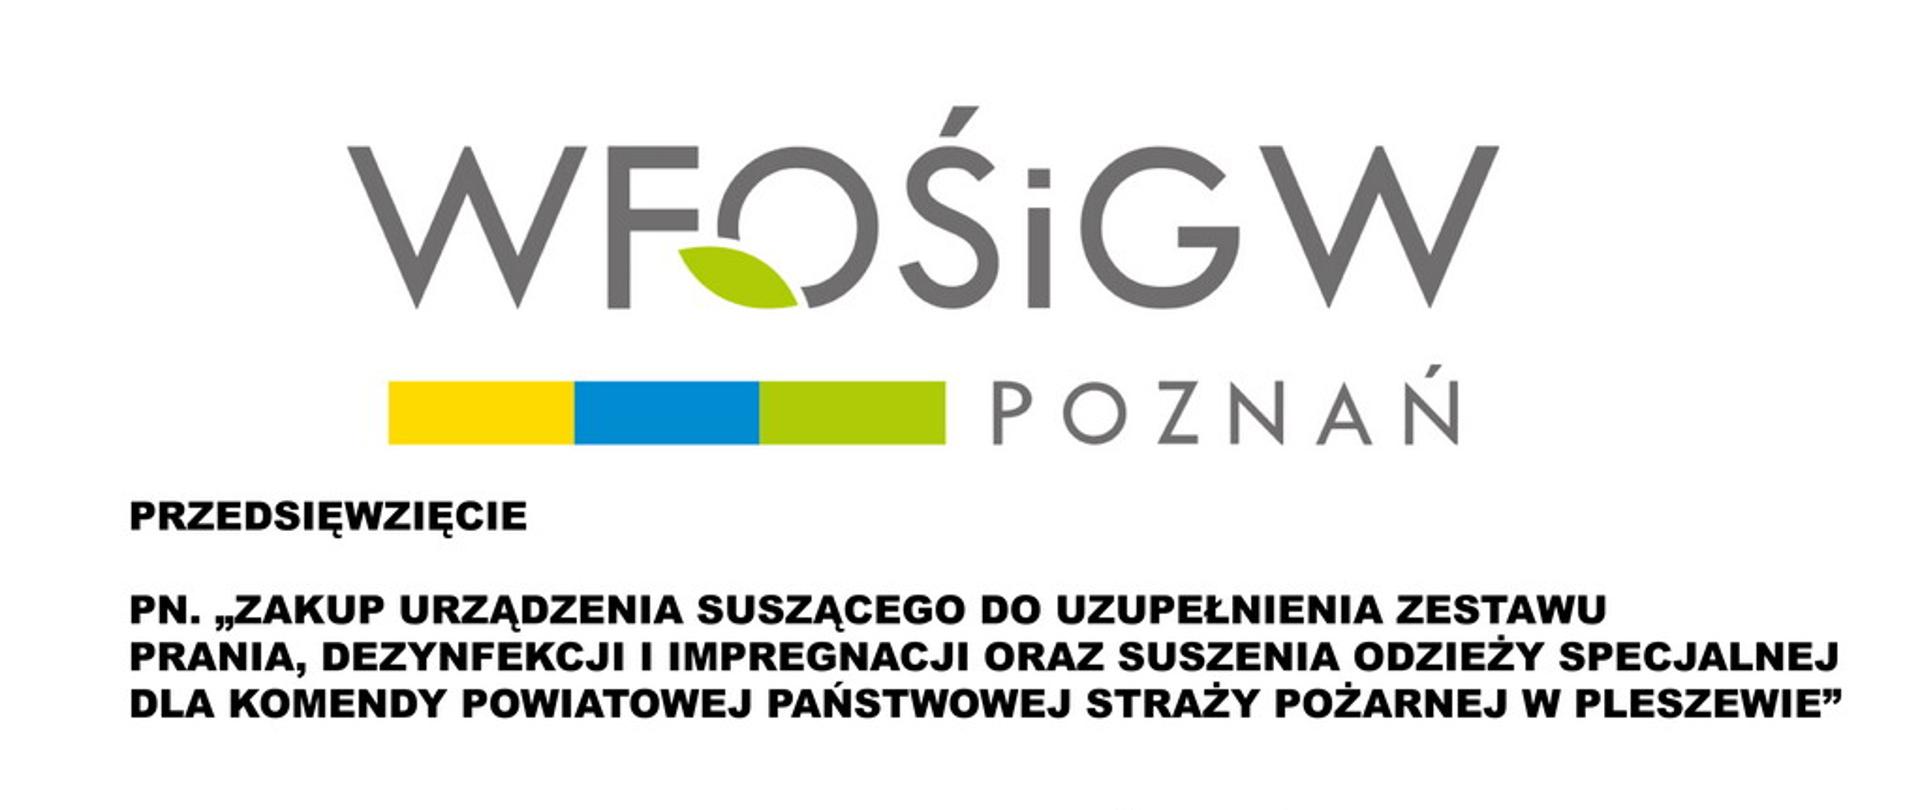 Logo WIOŚ wraz z nazwą programu